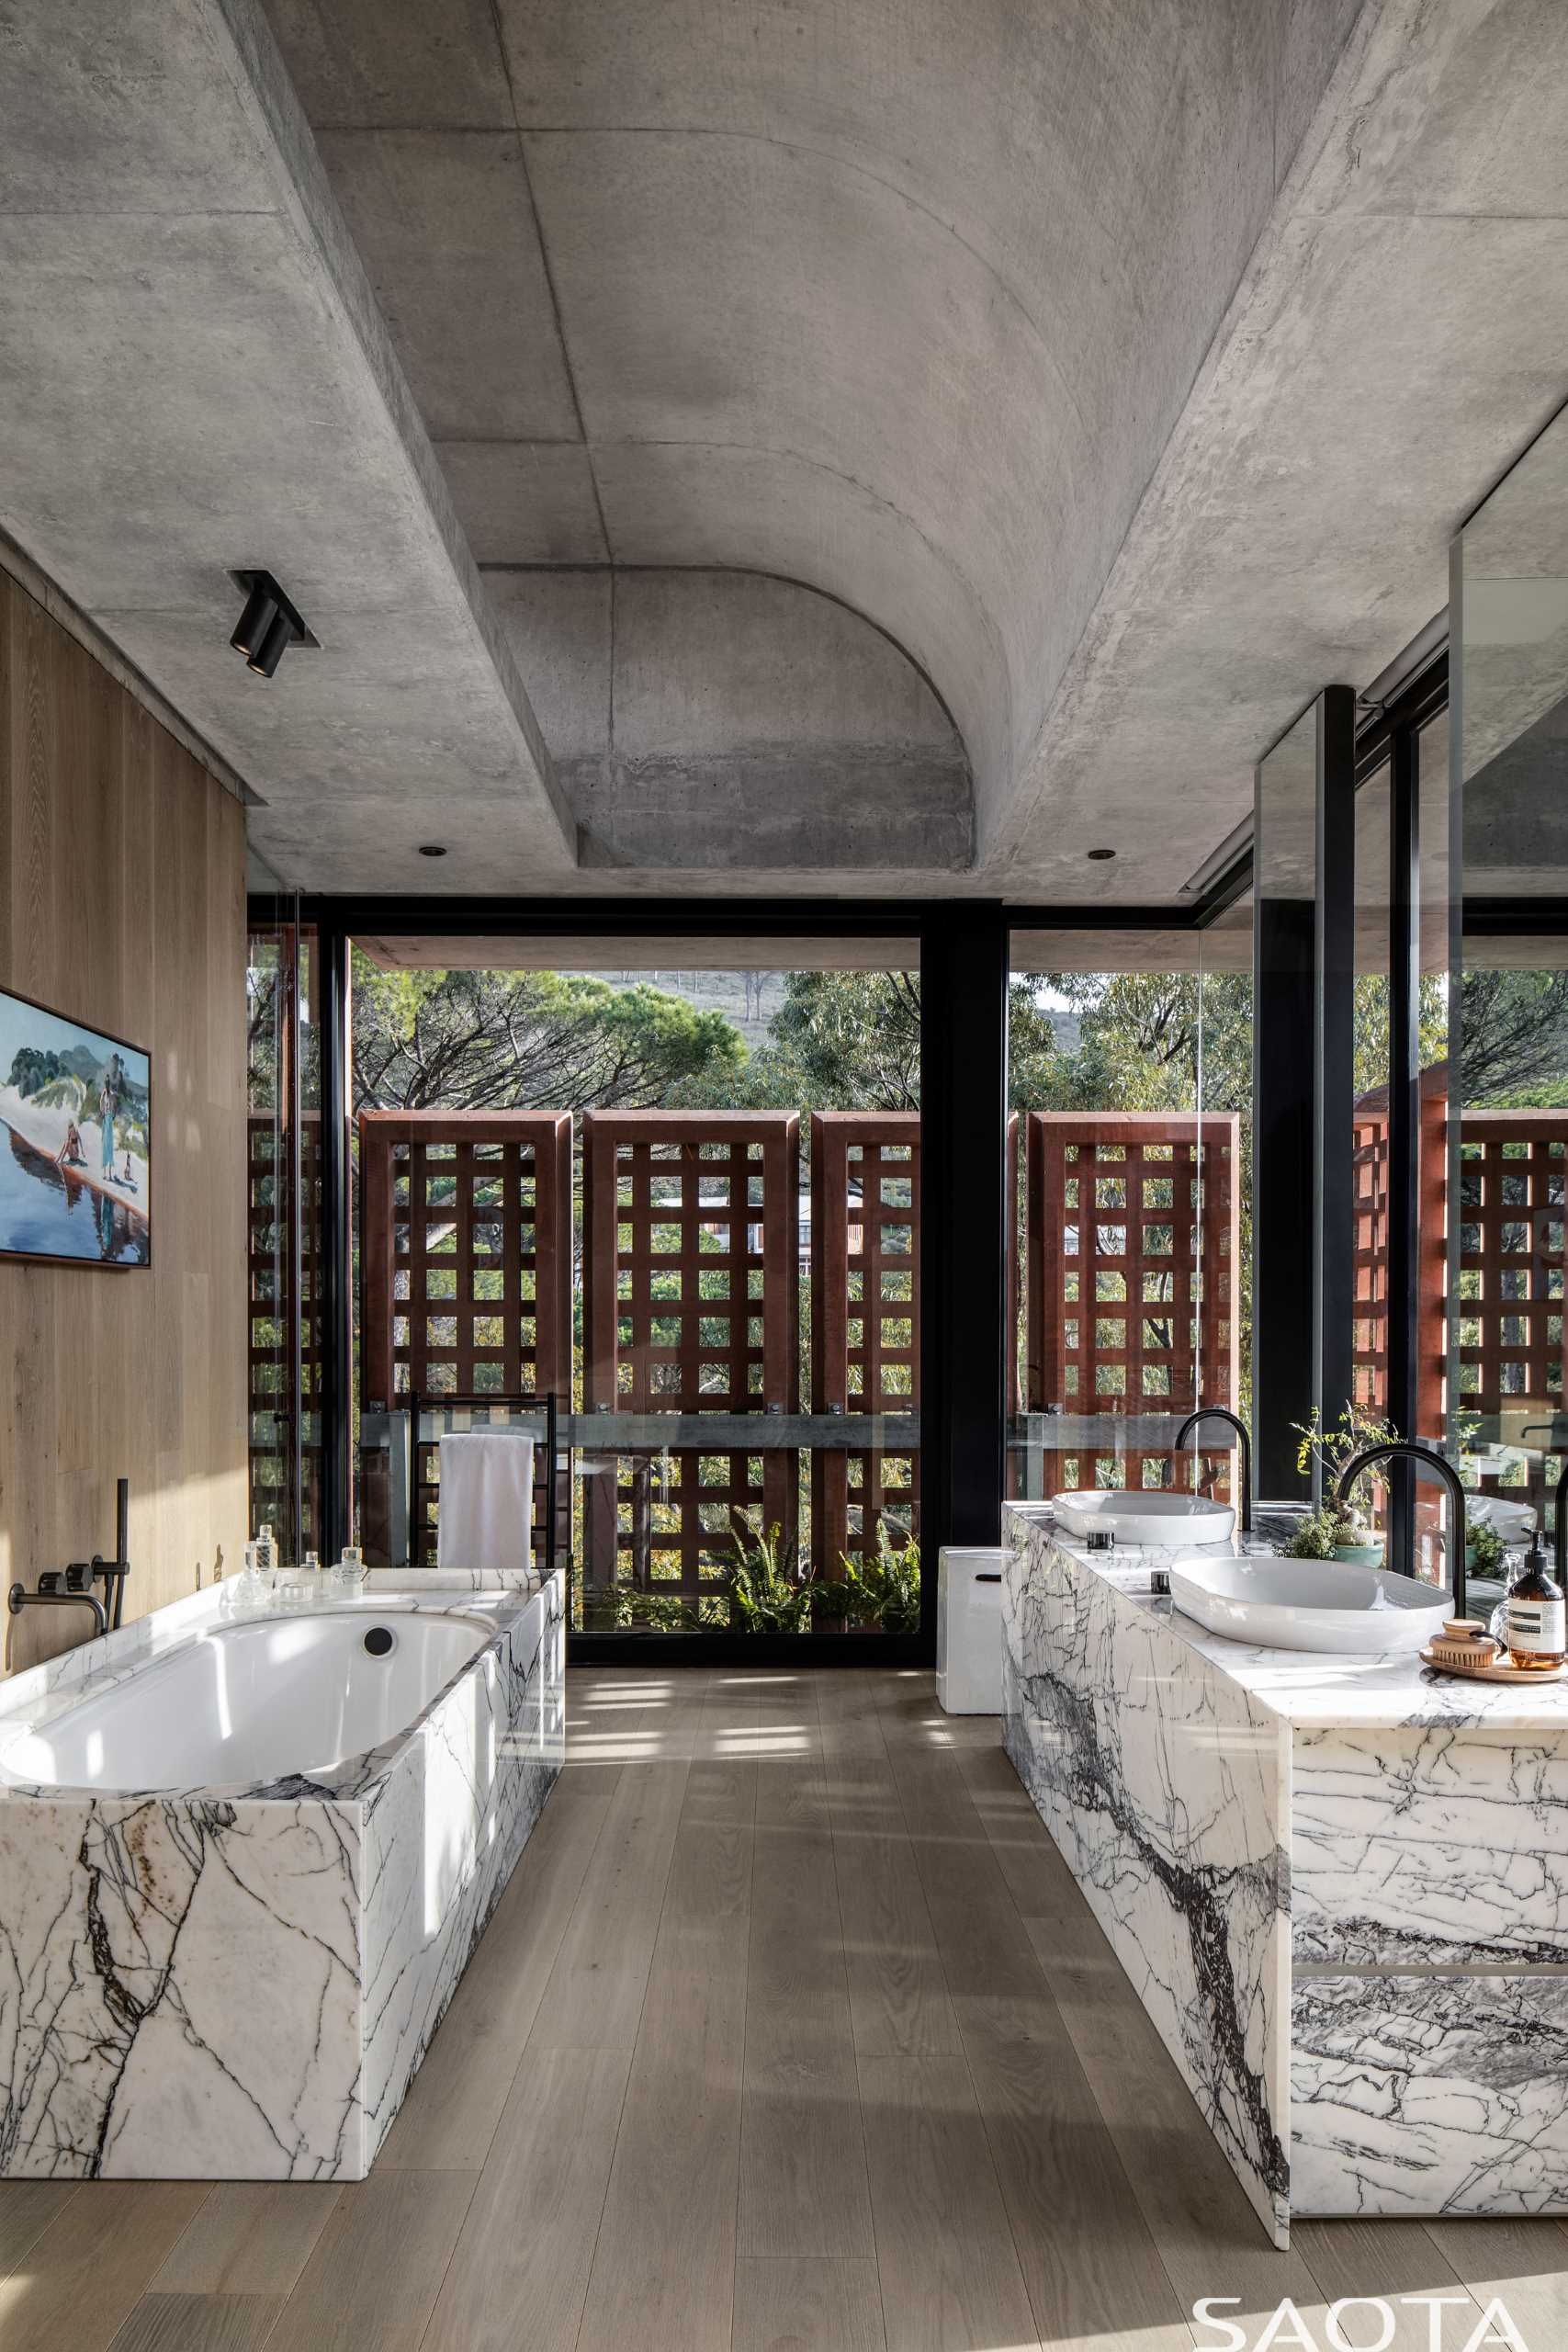 В этой ванной комнате изогнутый потолок добавляет пространству визуальный интерес, а туалетный столик соответствует обрамлению ванны.